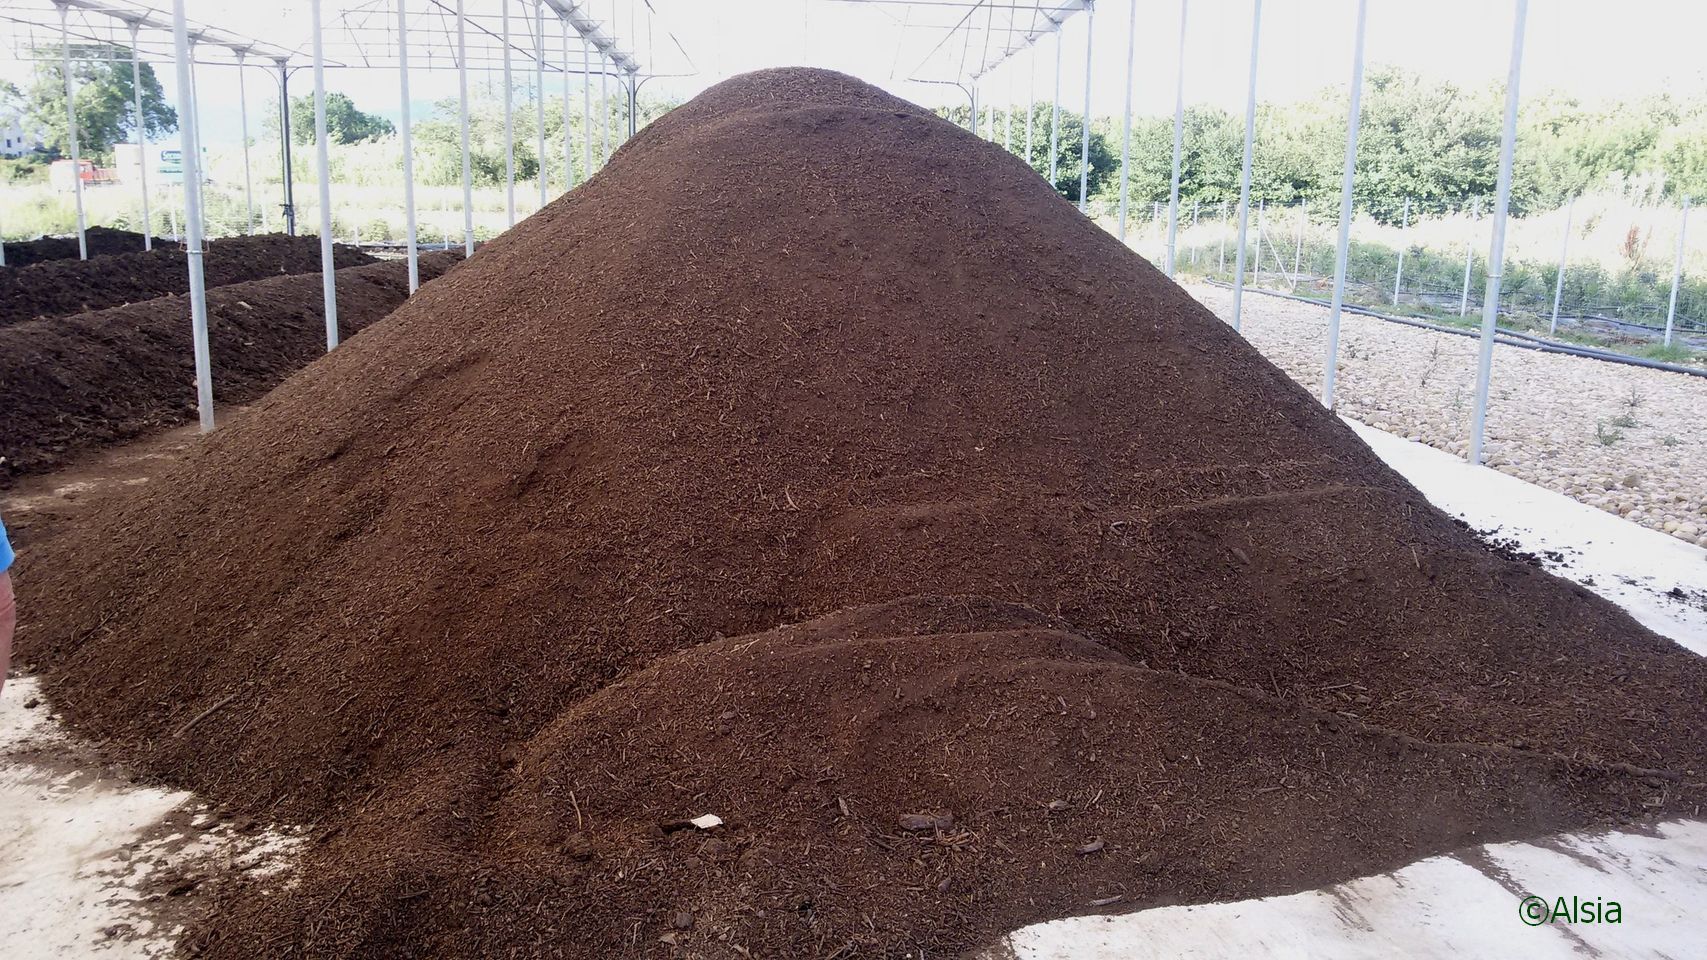 Cumulo di compost prodotto con scarti di aziende agricole